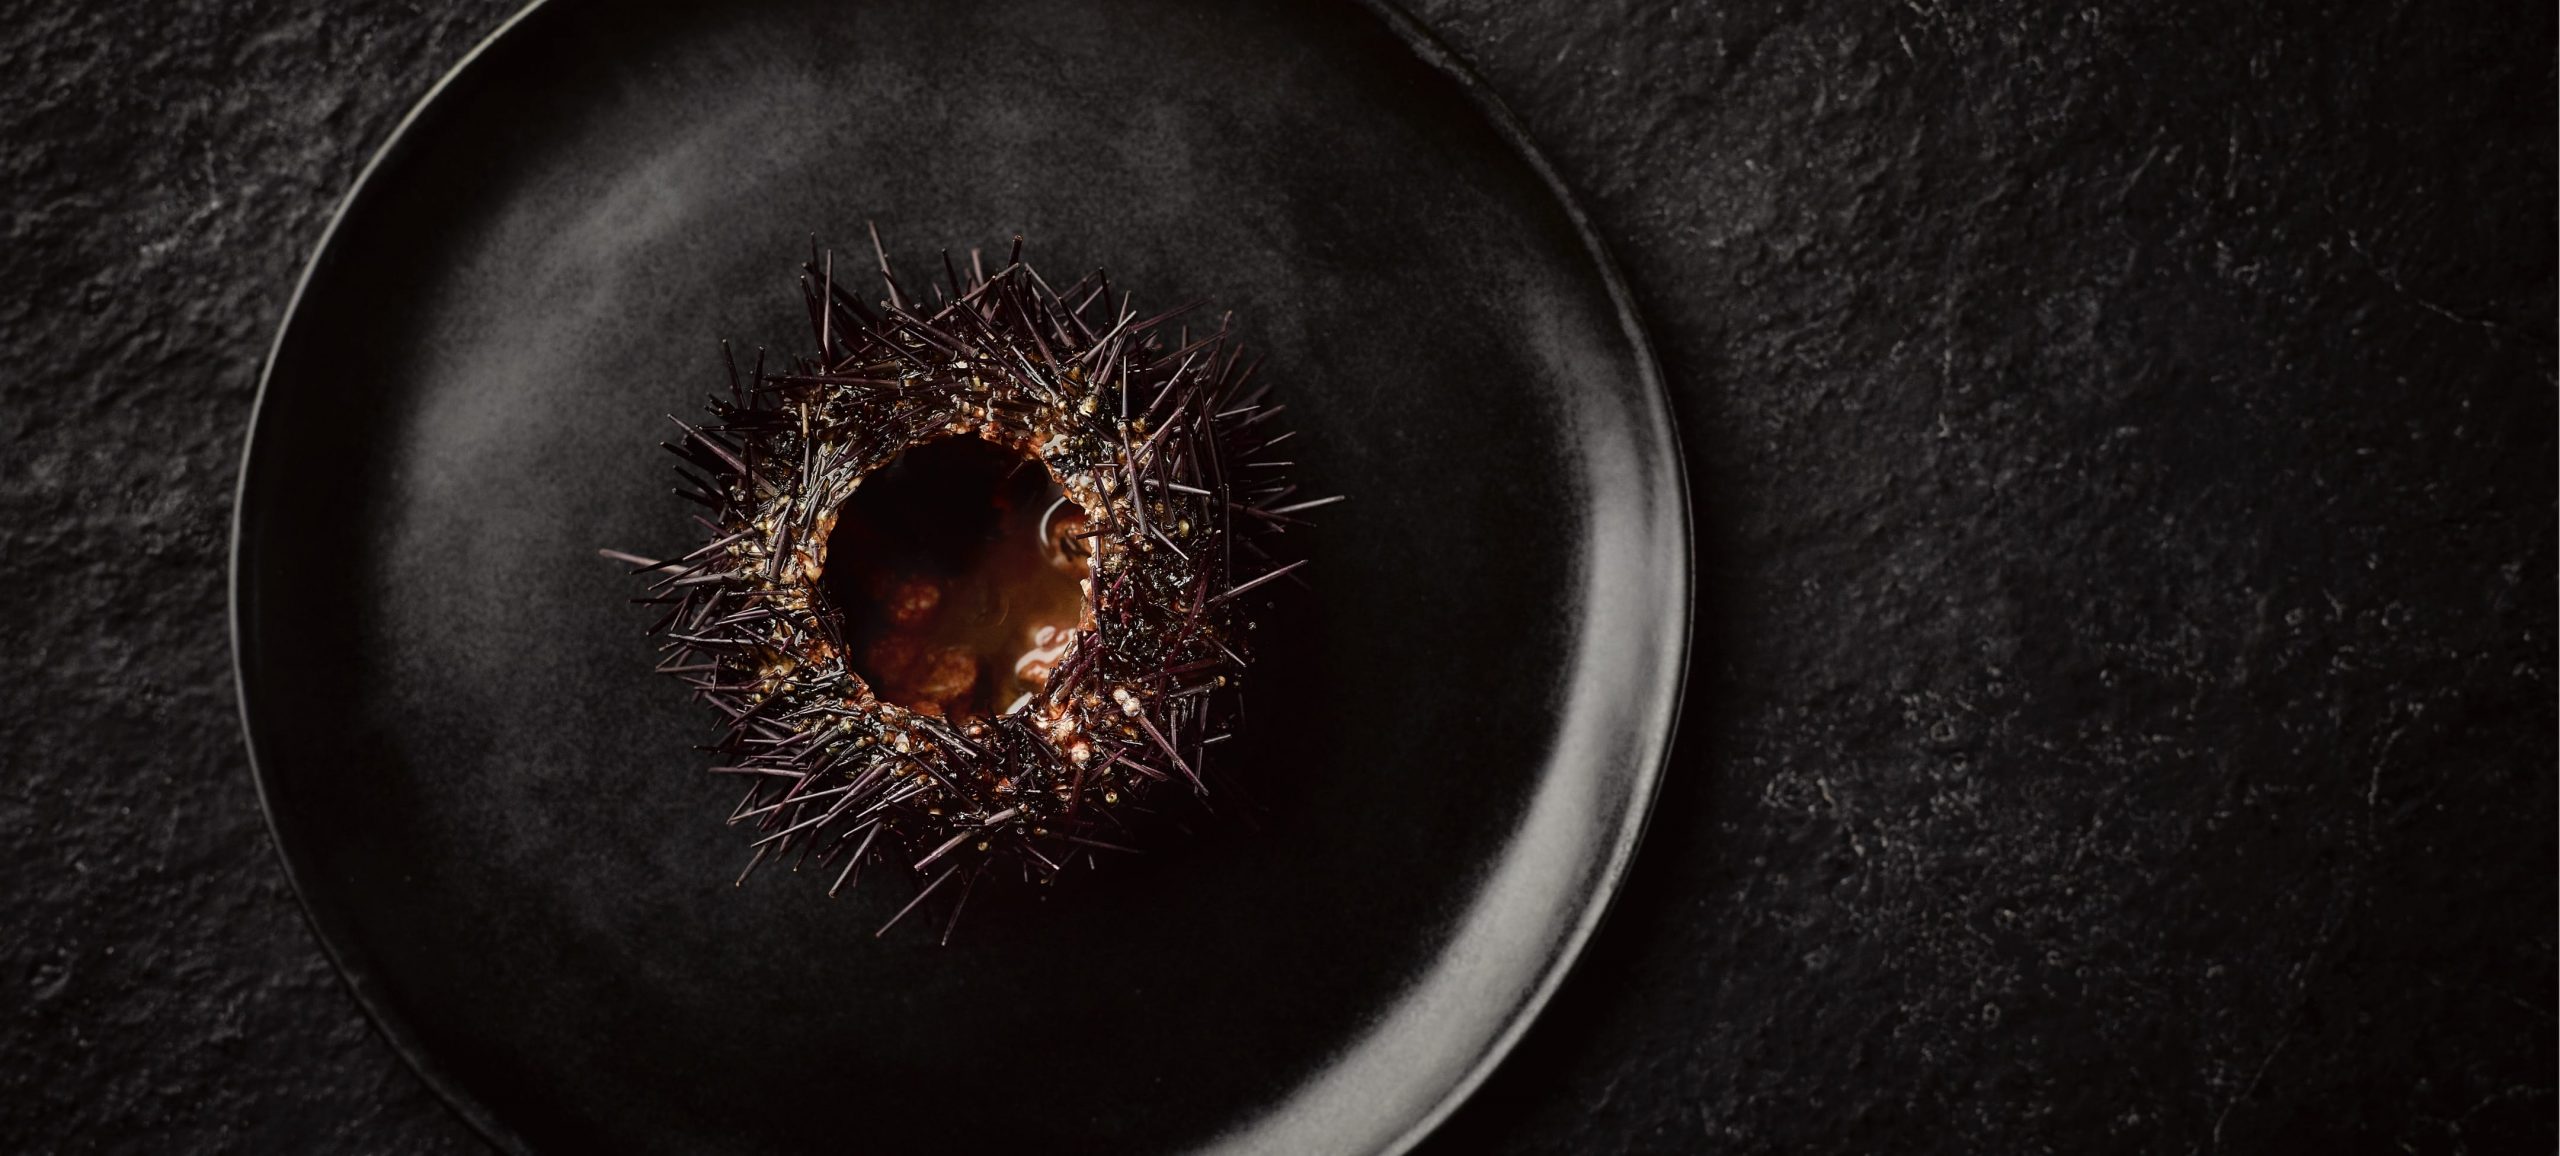 Gaggenau, sea urchin on black plate